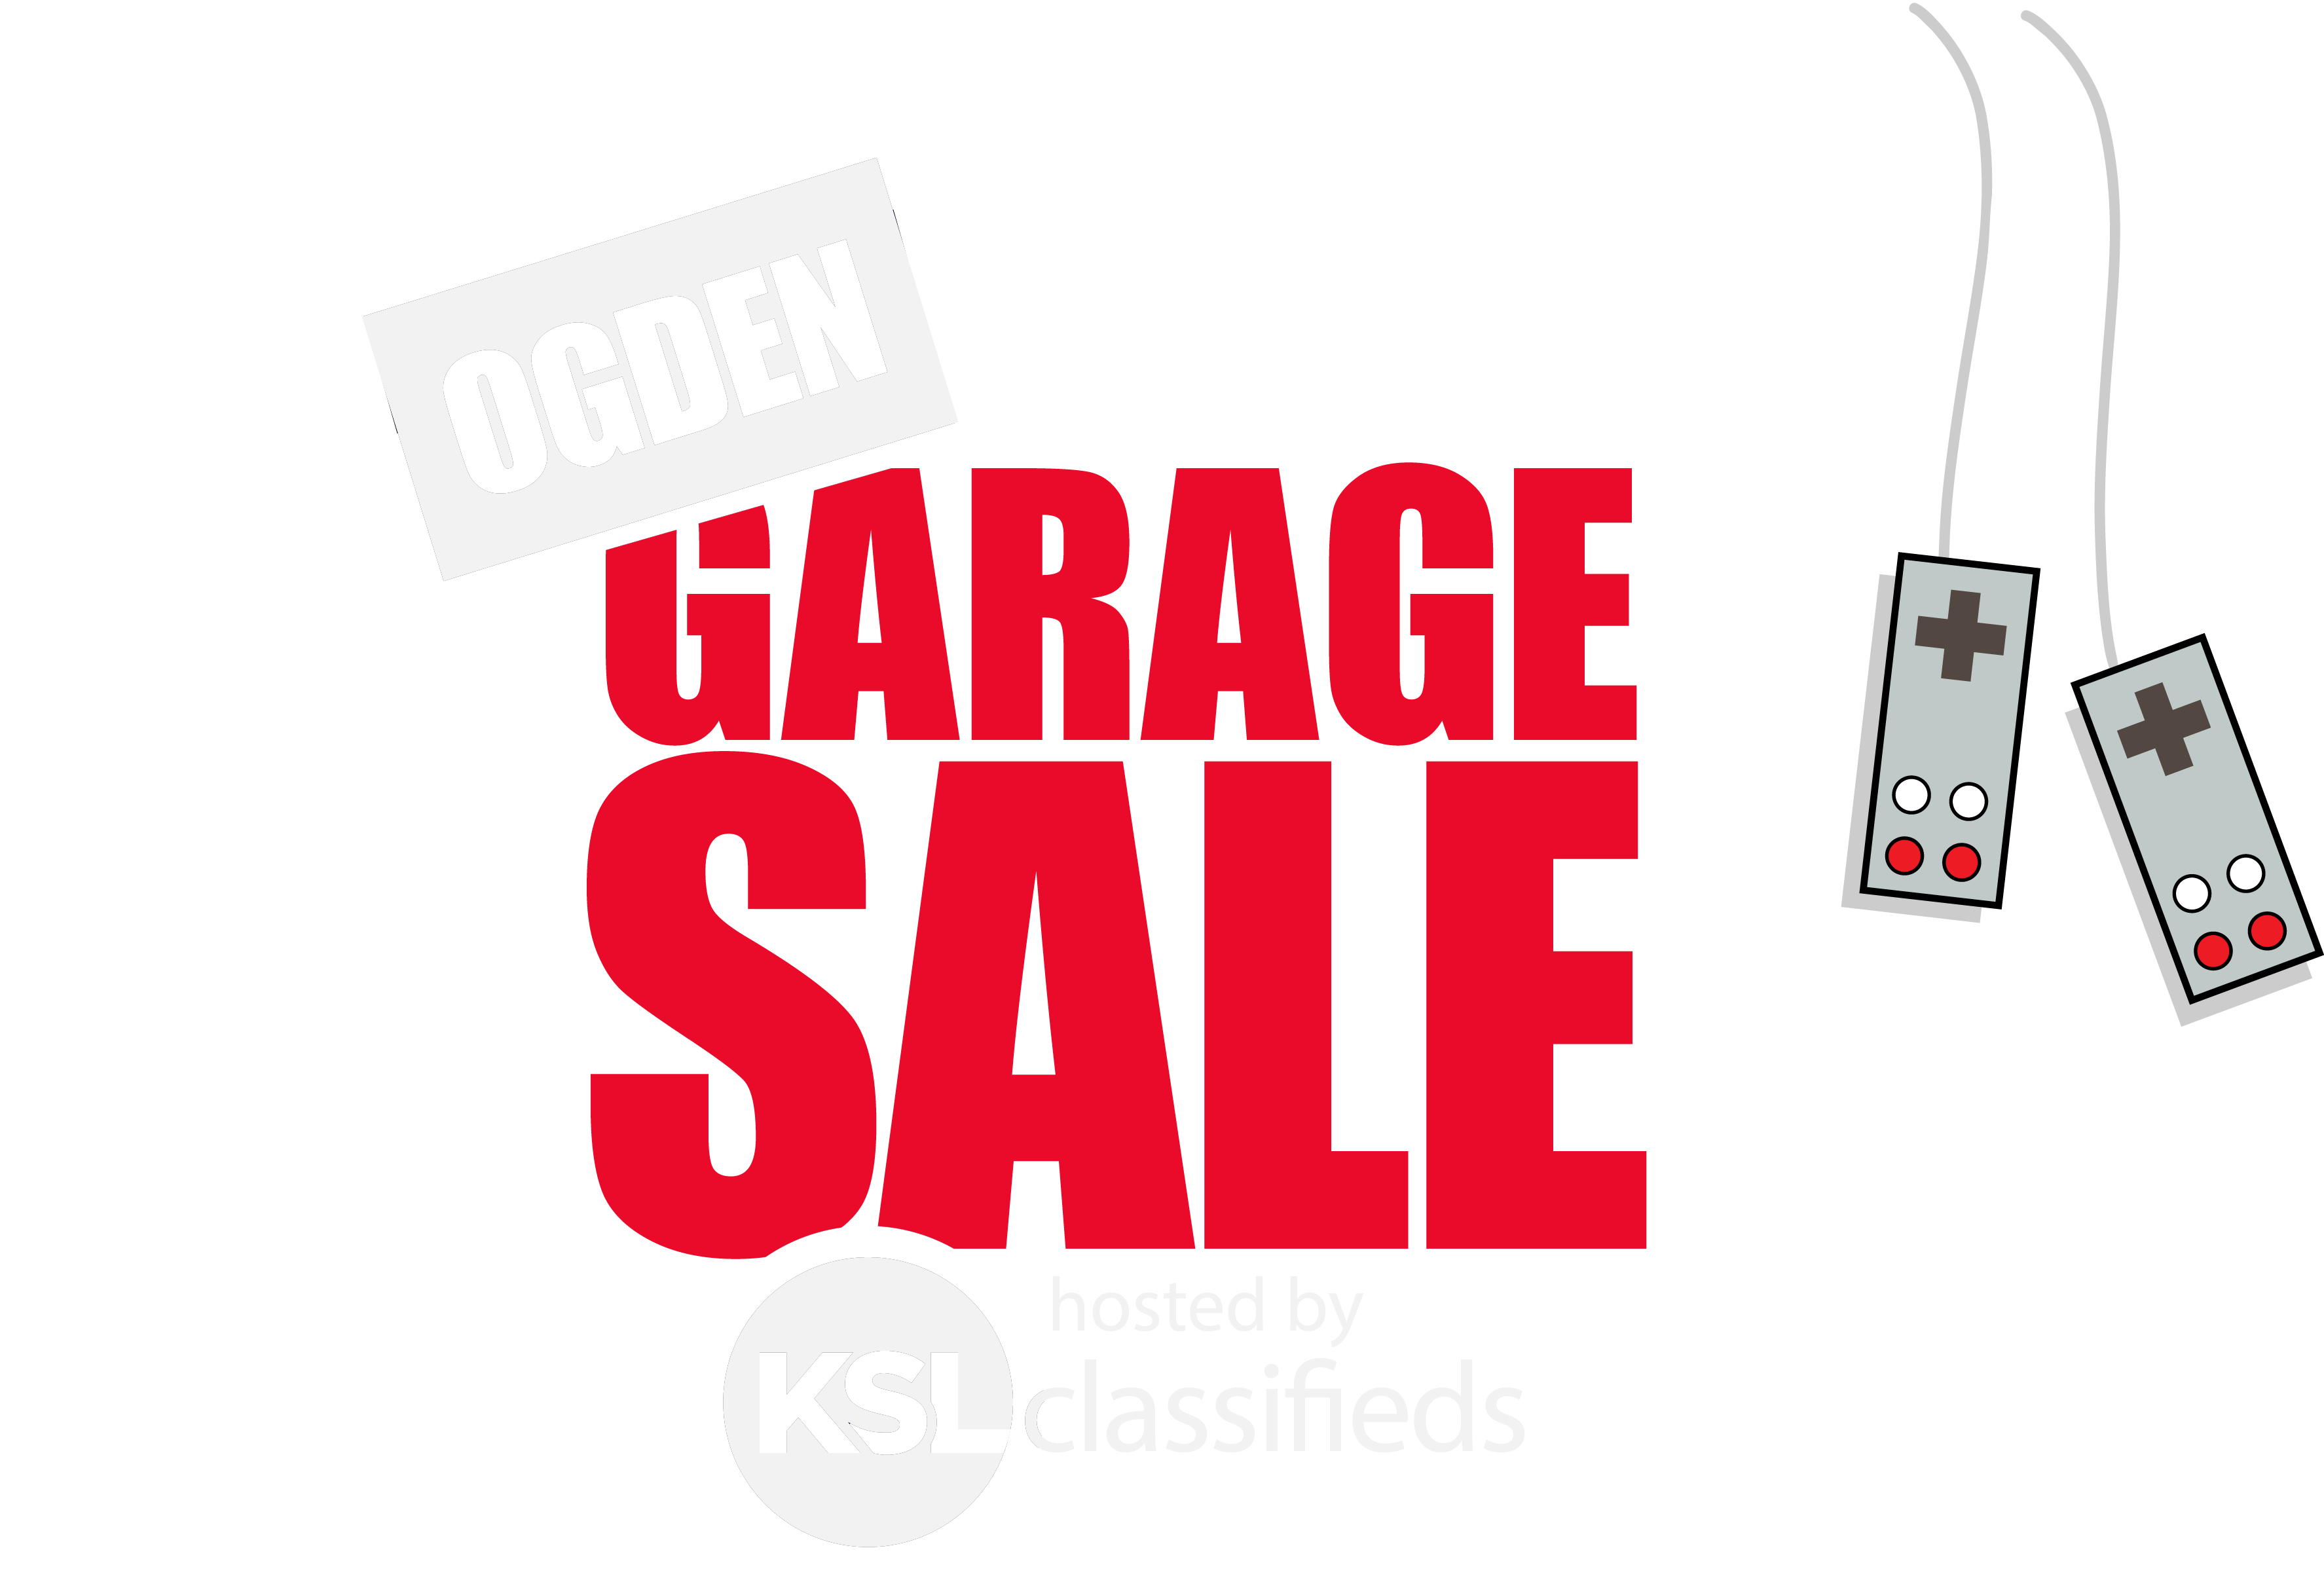 KSL Logo - Ogden Garage Sale | ksl.com